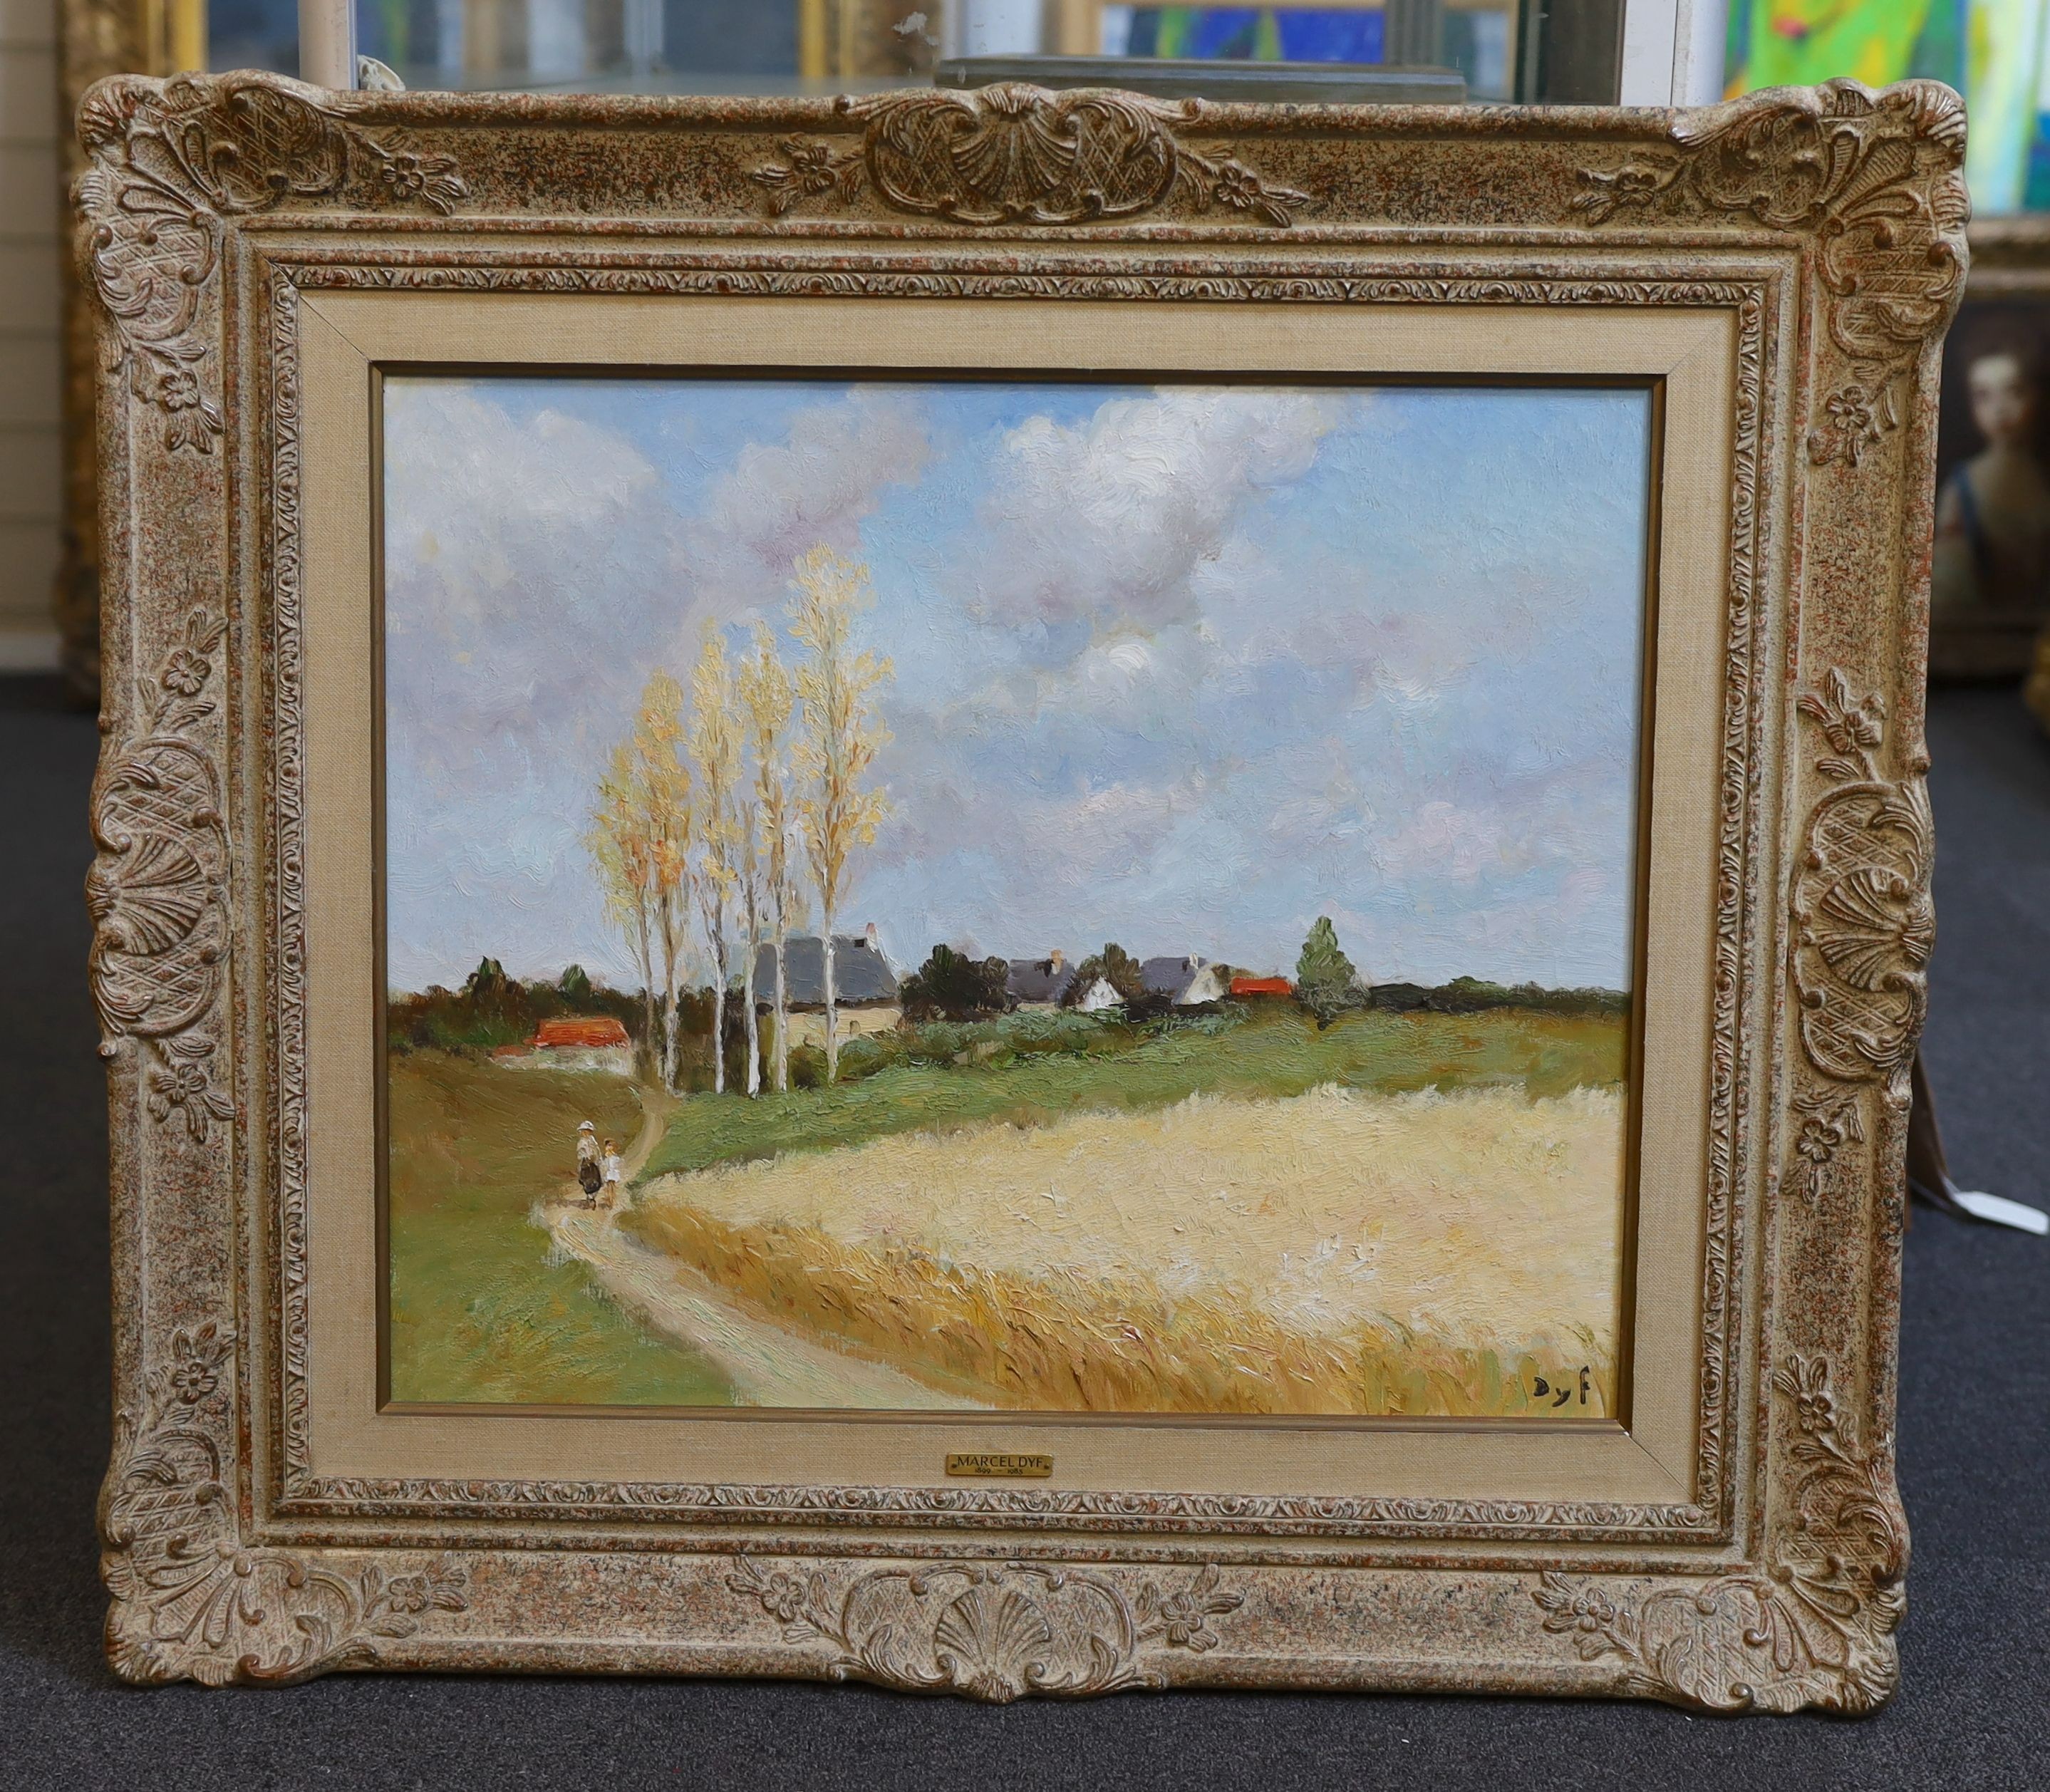 Marcel Dyf (French, 1899-1985), Tour au villages, oil on canvas, 44 x 54cm